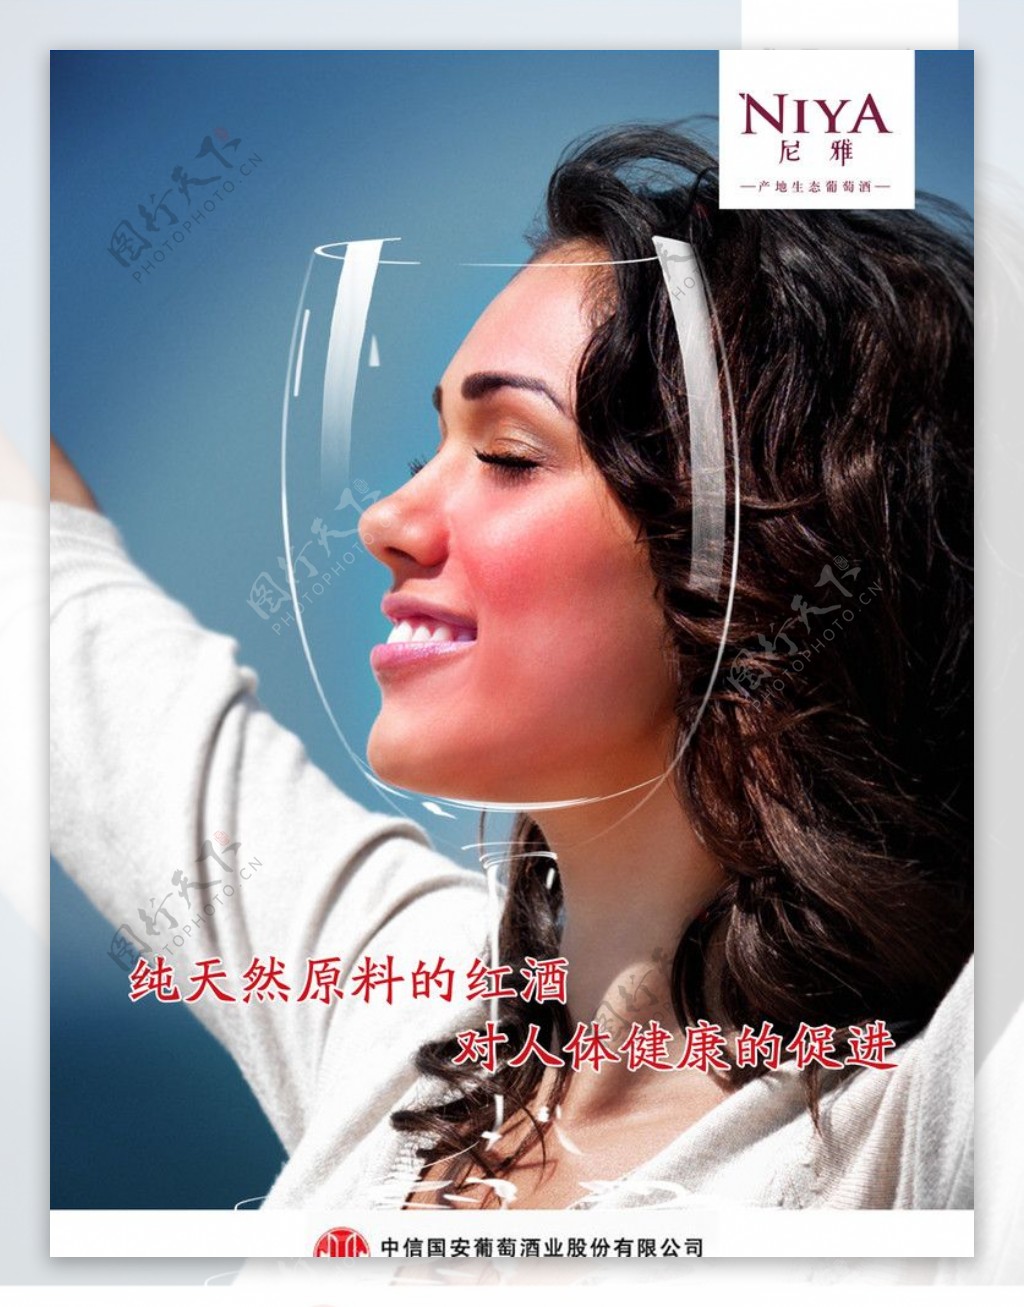 中信国安葡萄酒有限公司公益推广海报图片